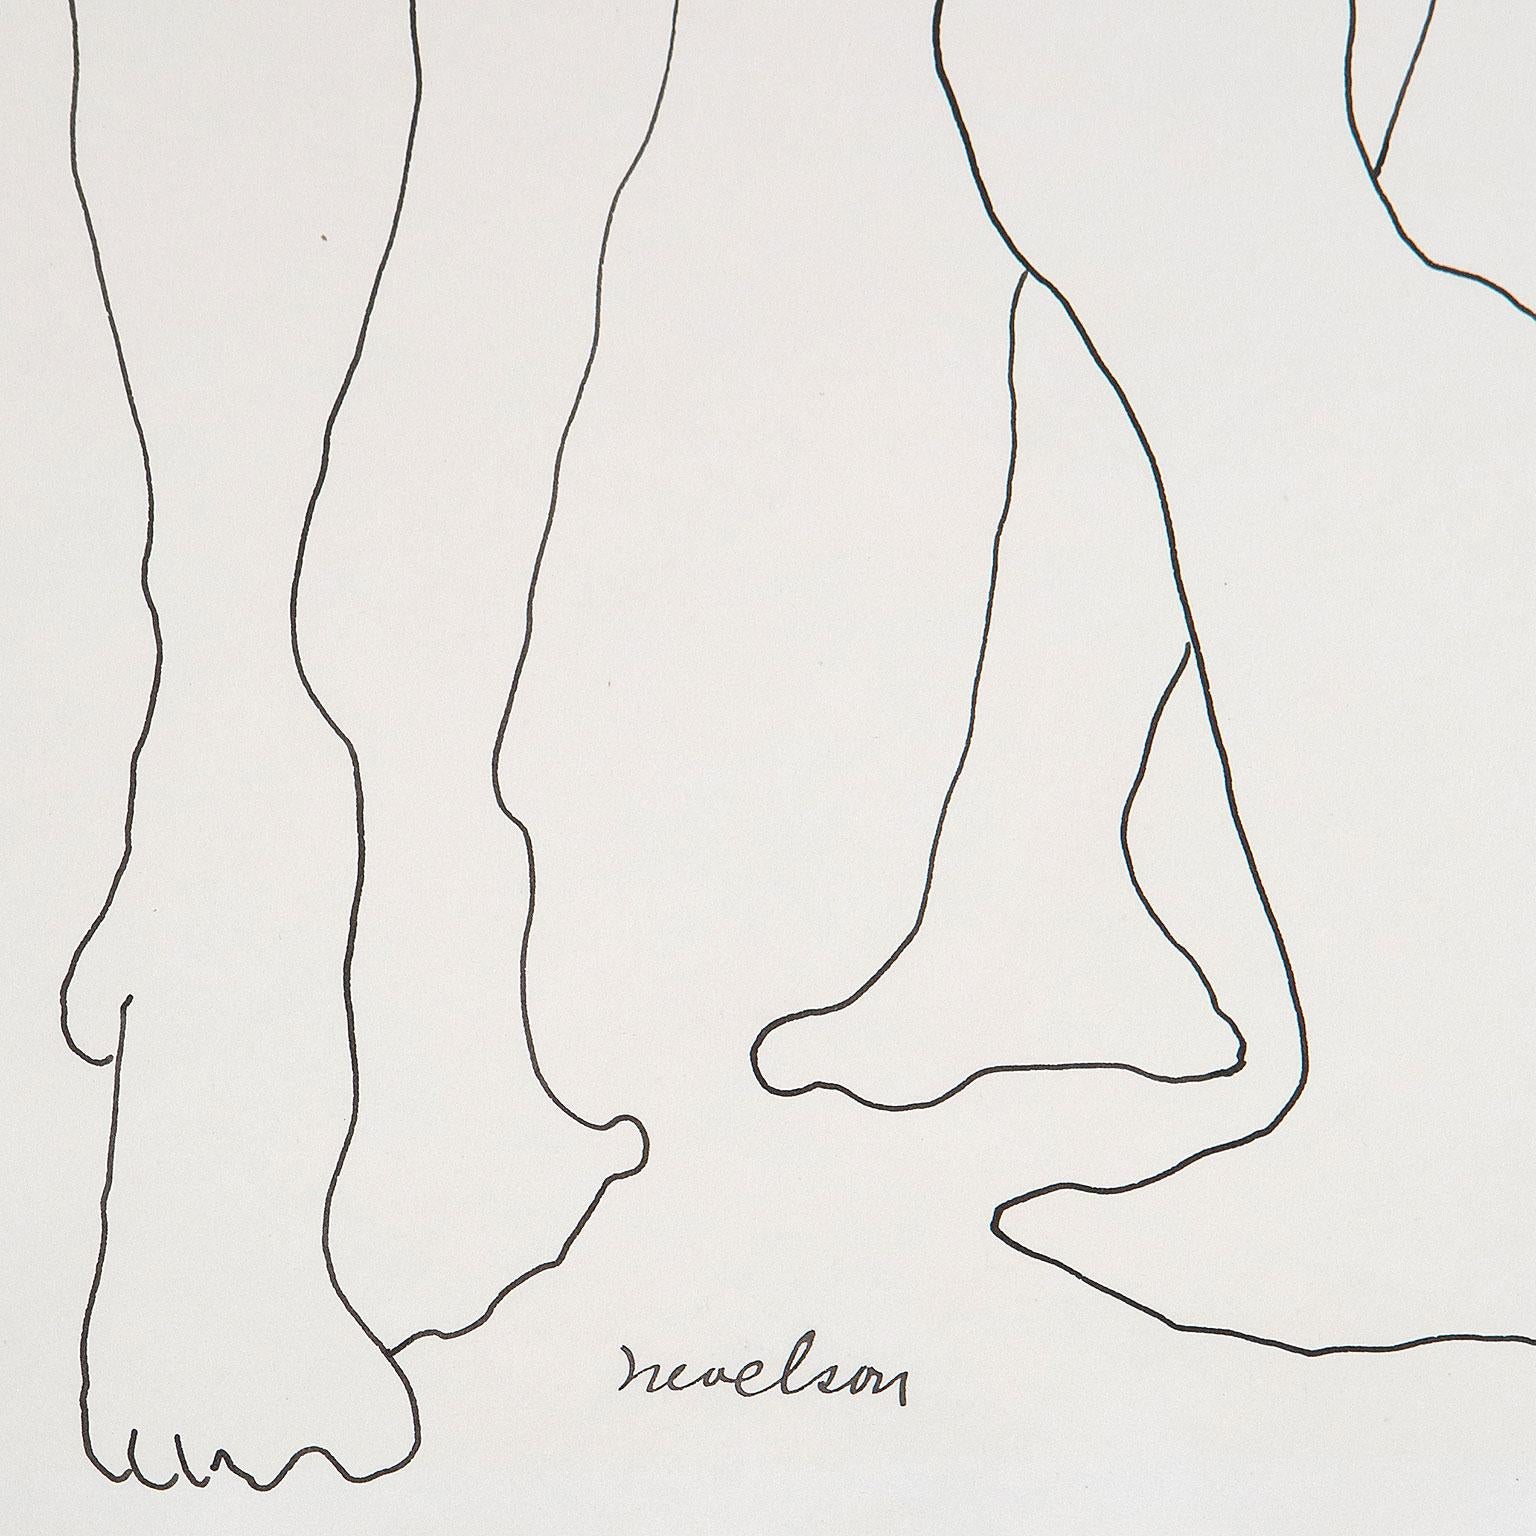 Louise Nevelson (1899-1988) est l'une des artistes les plus importantes du XXe siècle. Elle est réputée pour ses constructions sculpturales monochromes en bois.

Cependant, il est important de souligner que Nevelson a peiné et expérimenté pendant